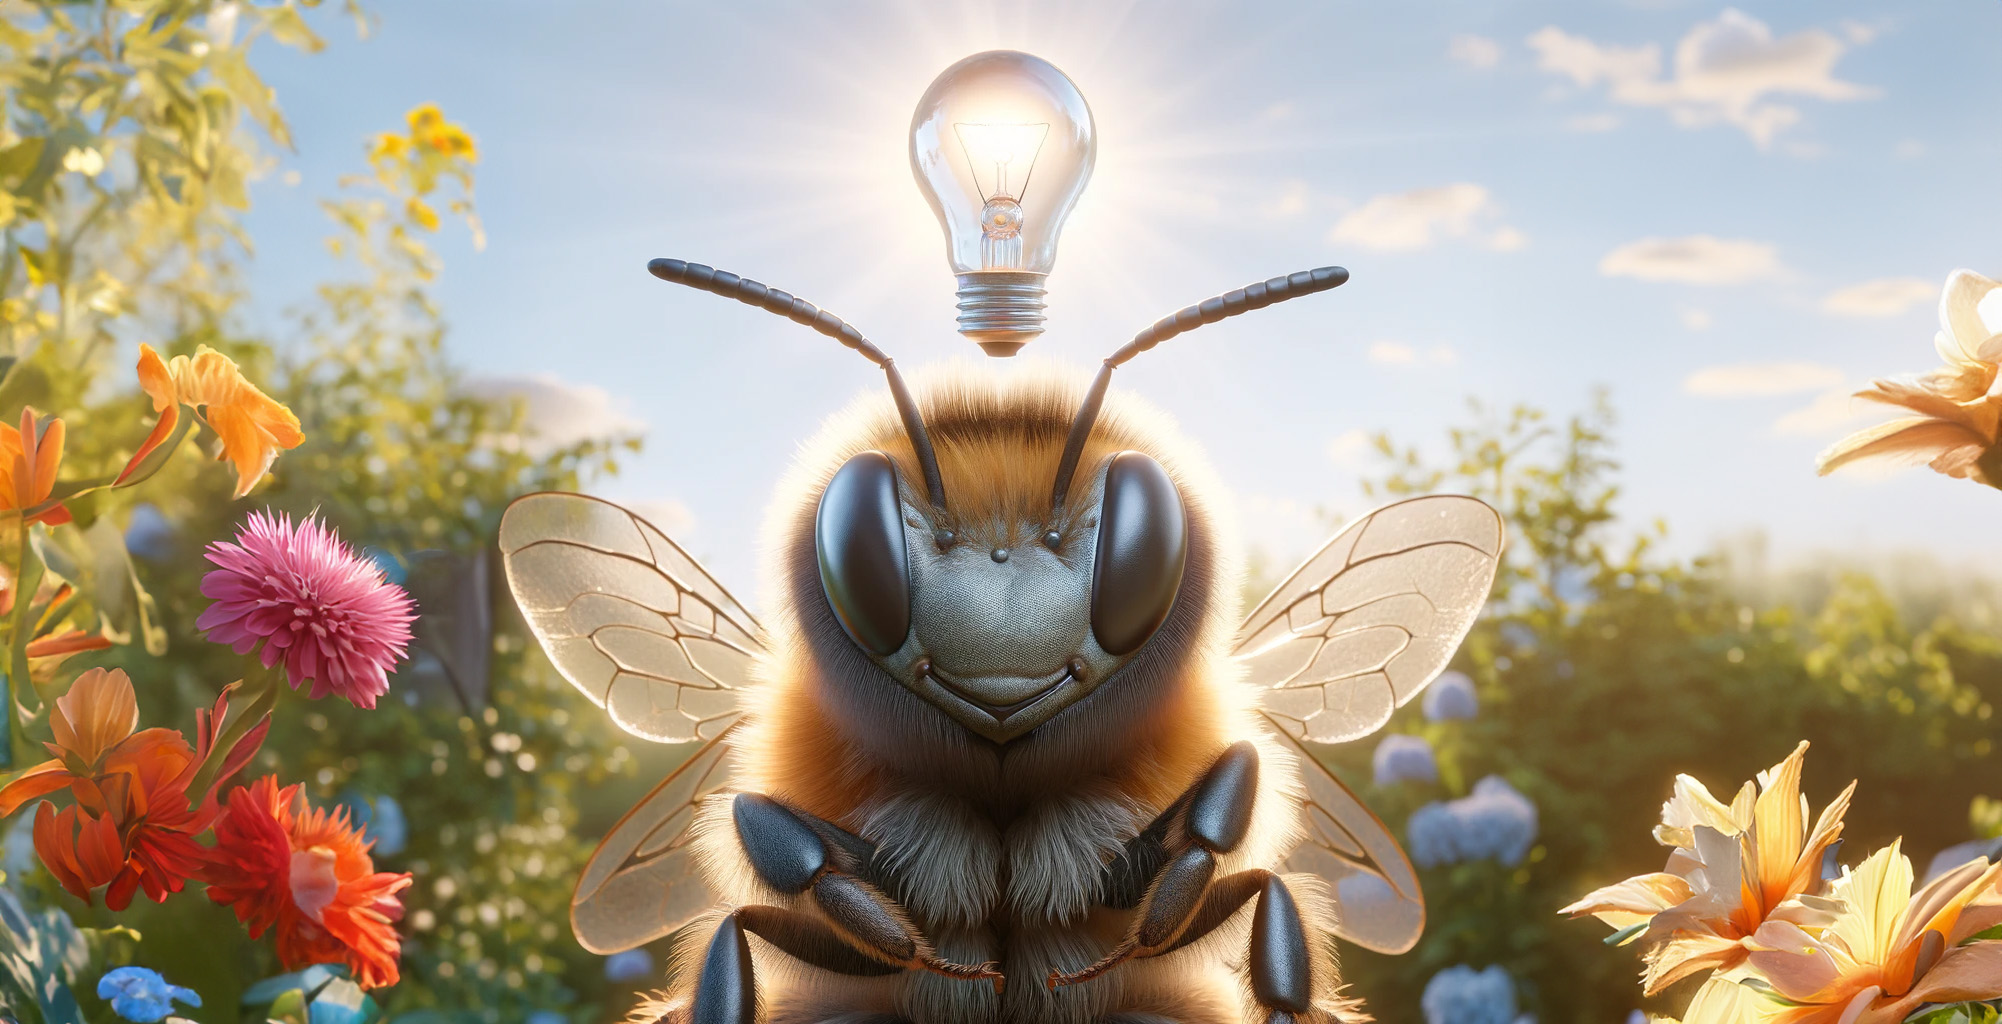 sentient bee